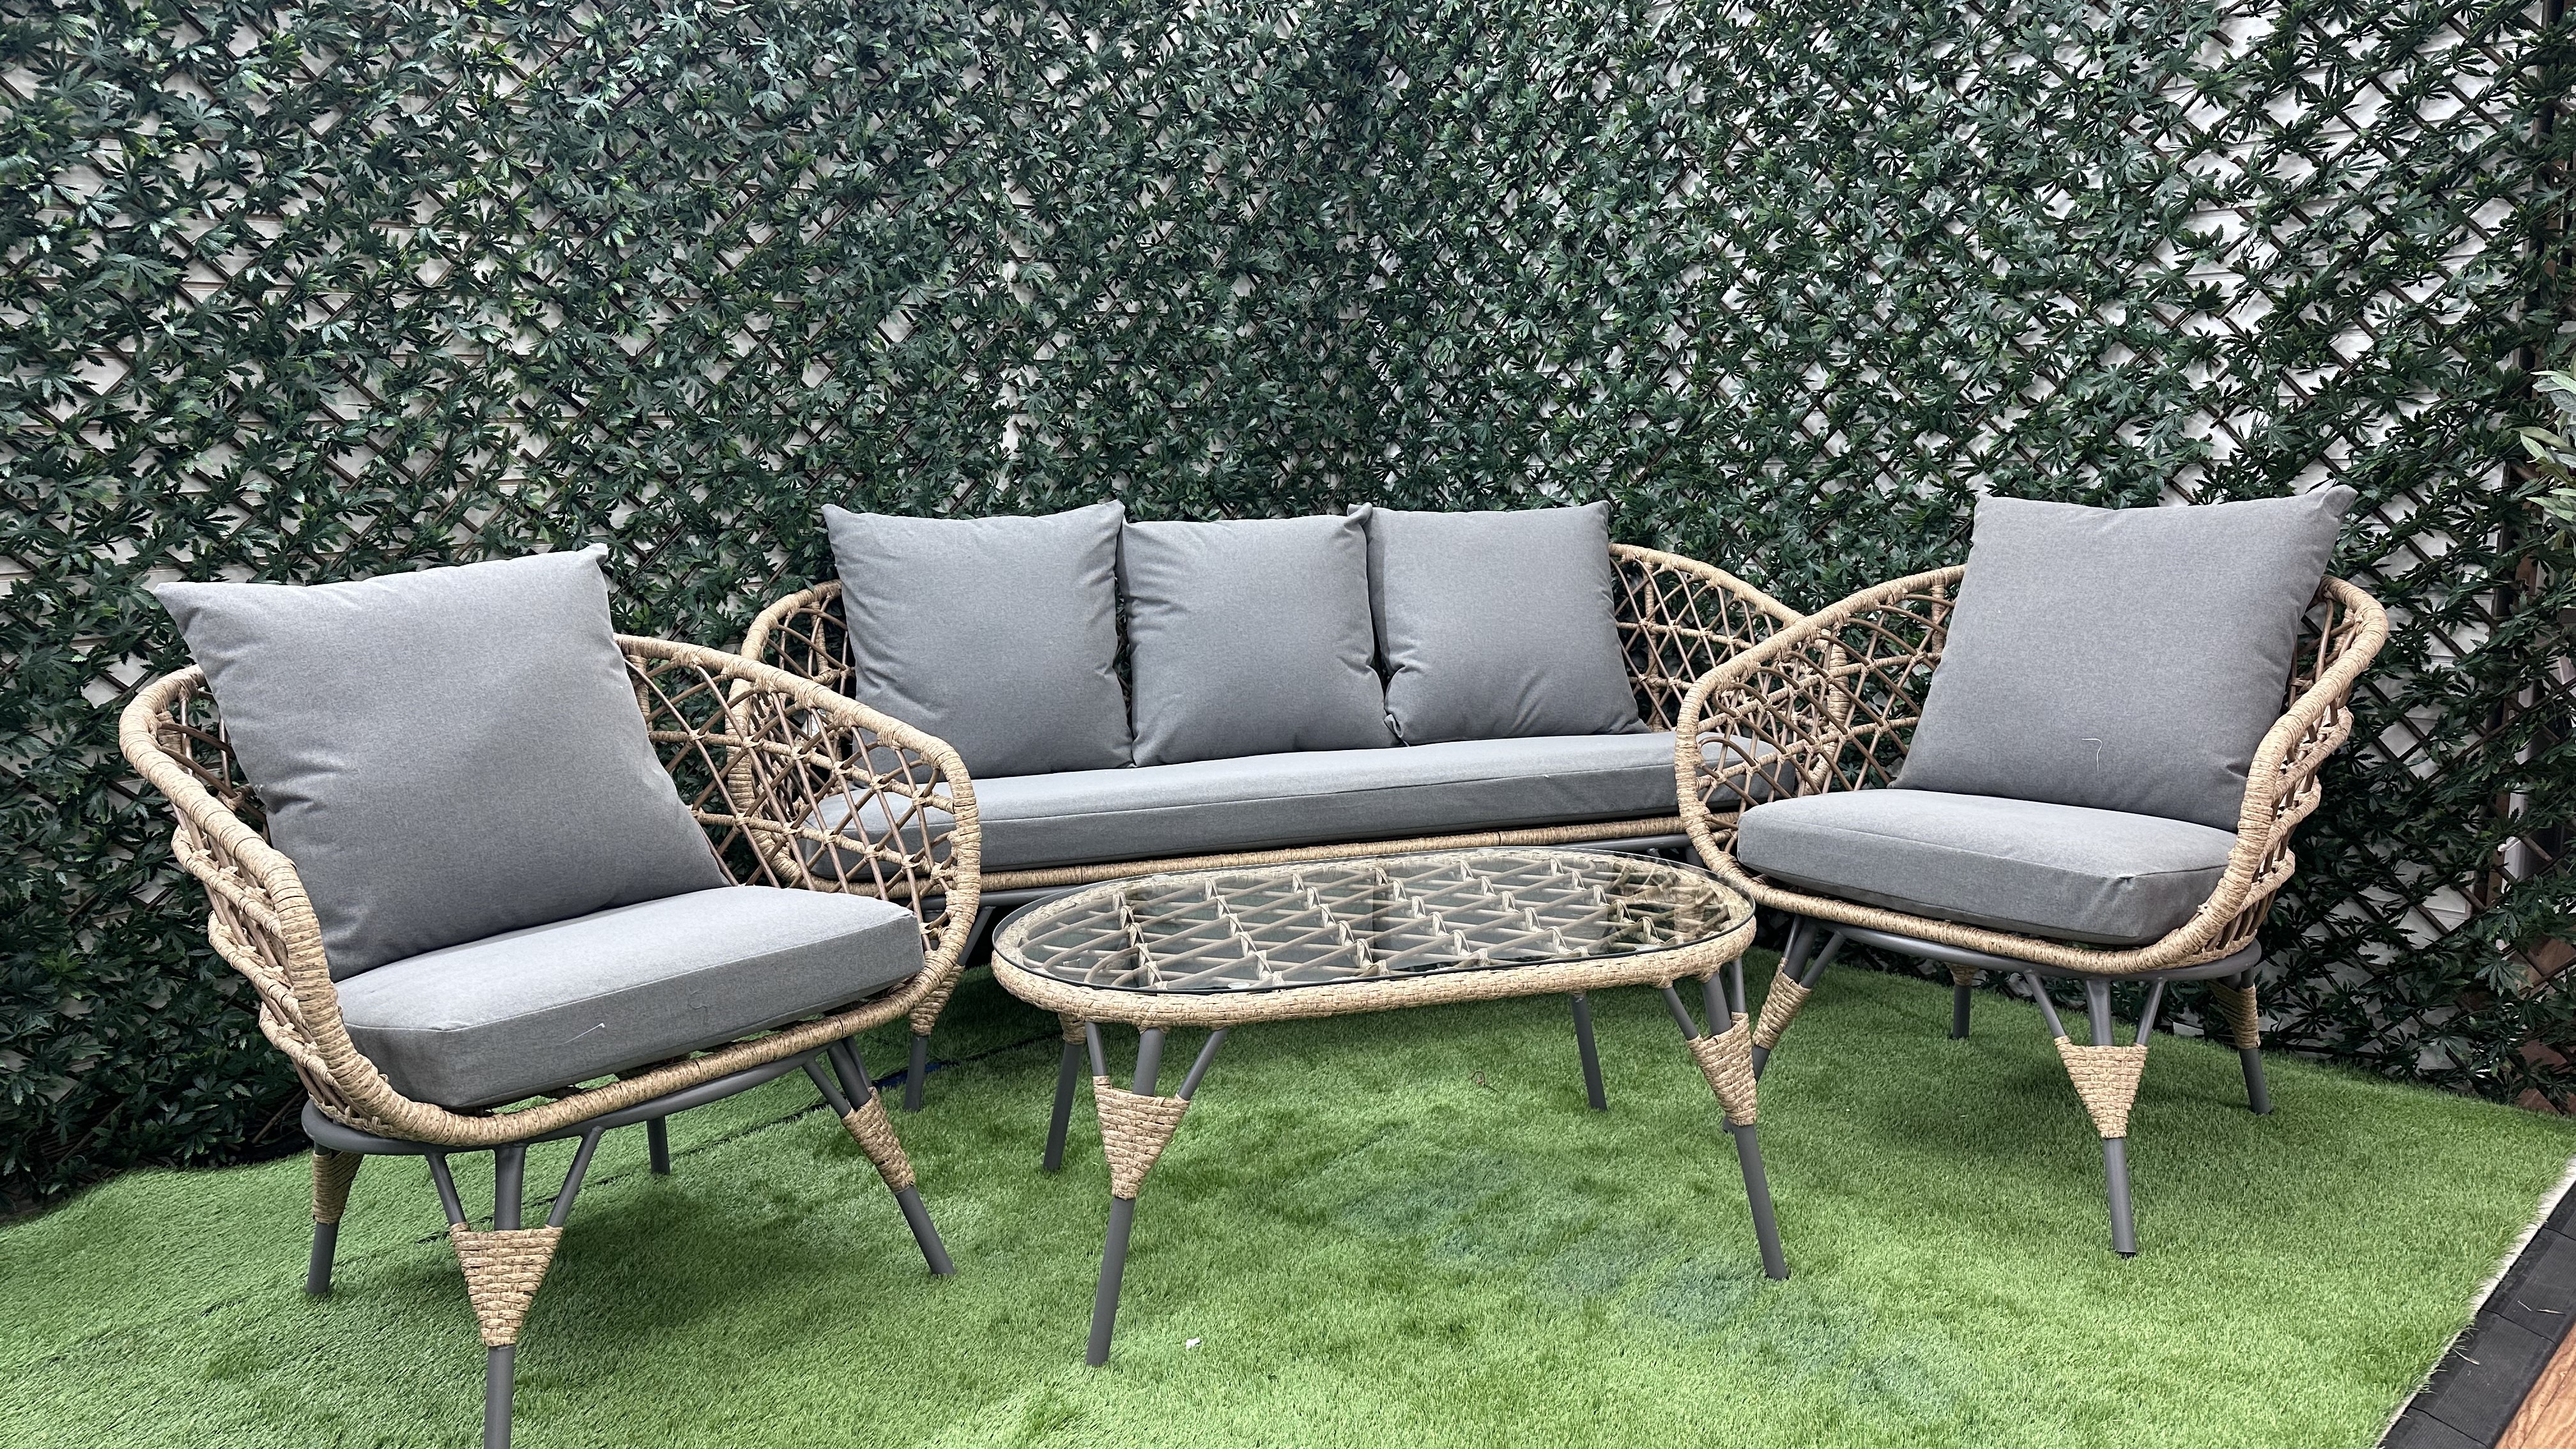 Enjoy Stunning New Garden Furniture For Under £1,000 with Hilltop Garden Centre